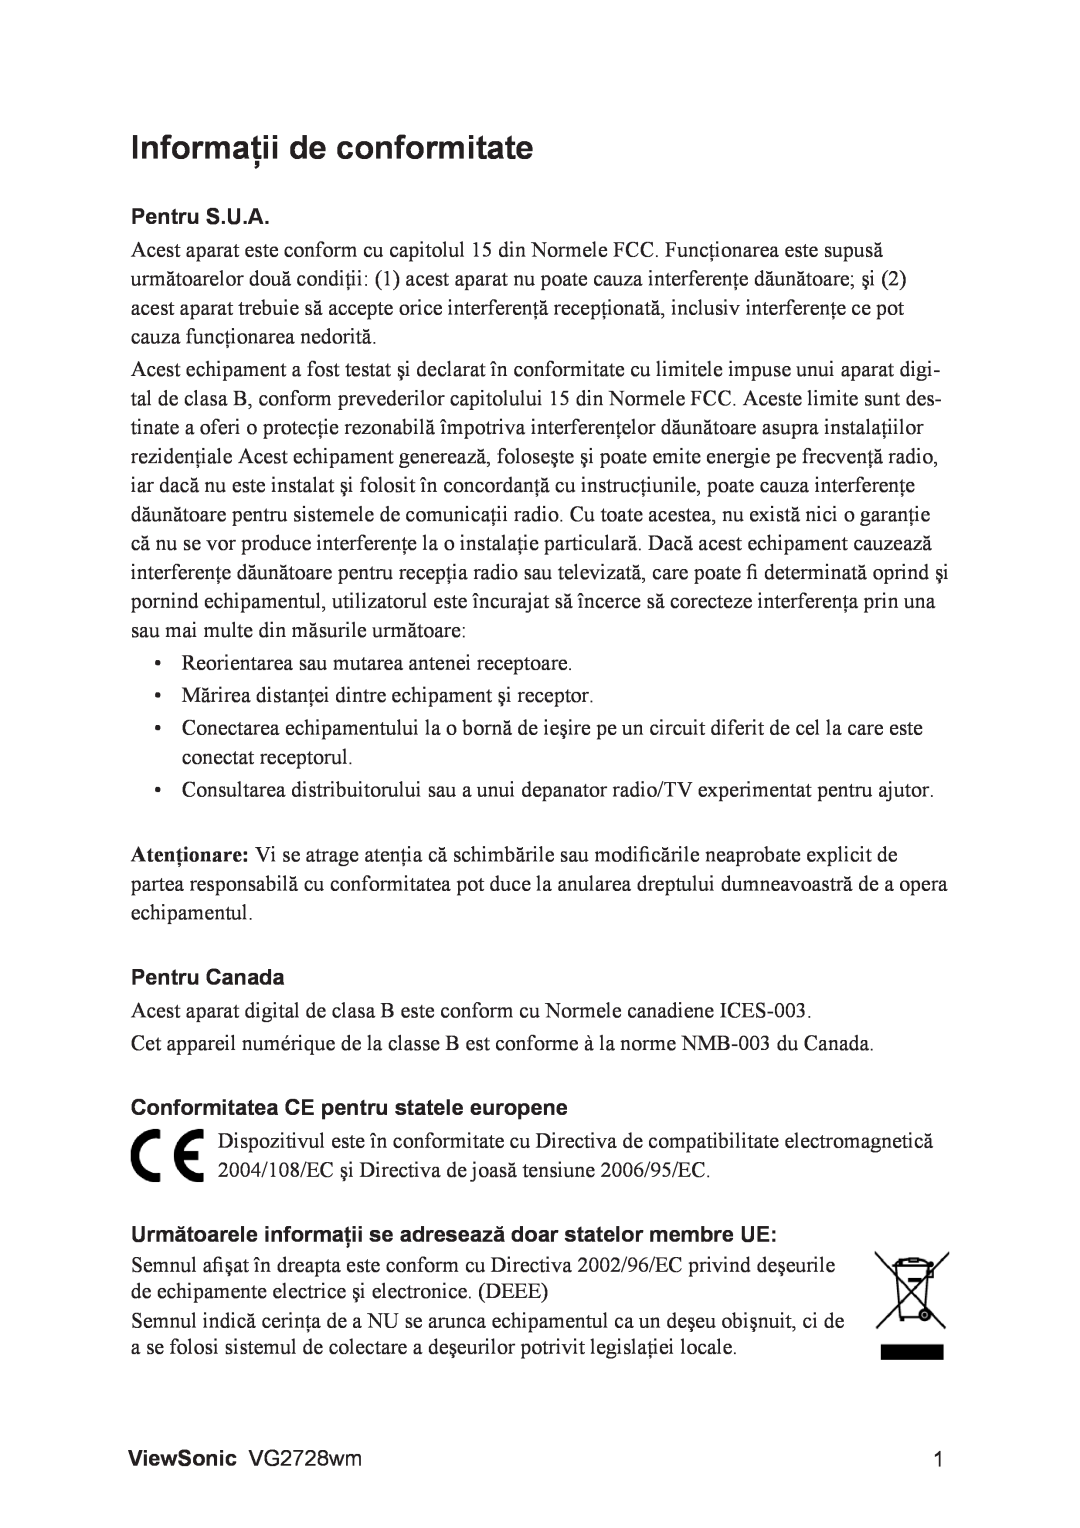 ViewSonic VS12844 manual Informaţii de conformitate, Pentru S.U.A, Pentru Canada, Conformitatea CE pentru statele europene 